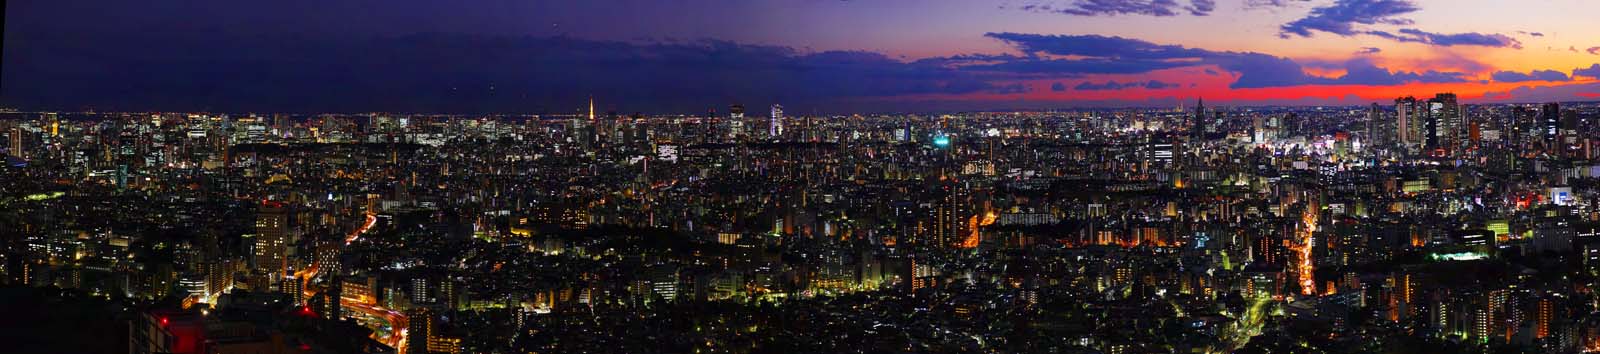 fotografia, material, livra, ajardine, imagine, proveja fotografia,Panorama de Tquio, construindo, Ikebukuro, Non, 